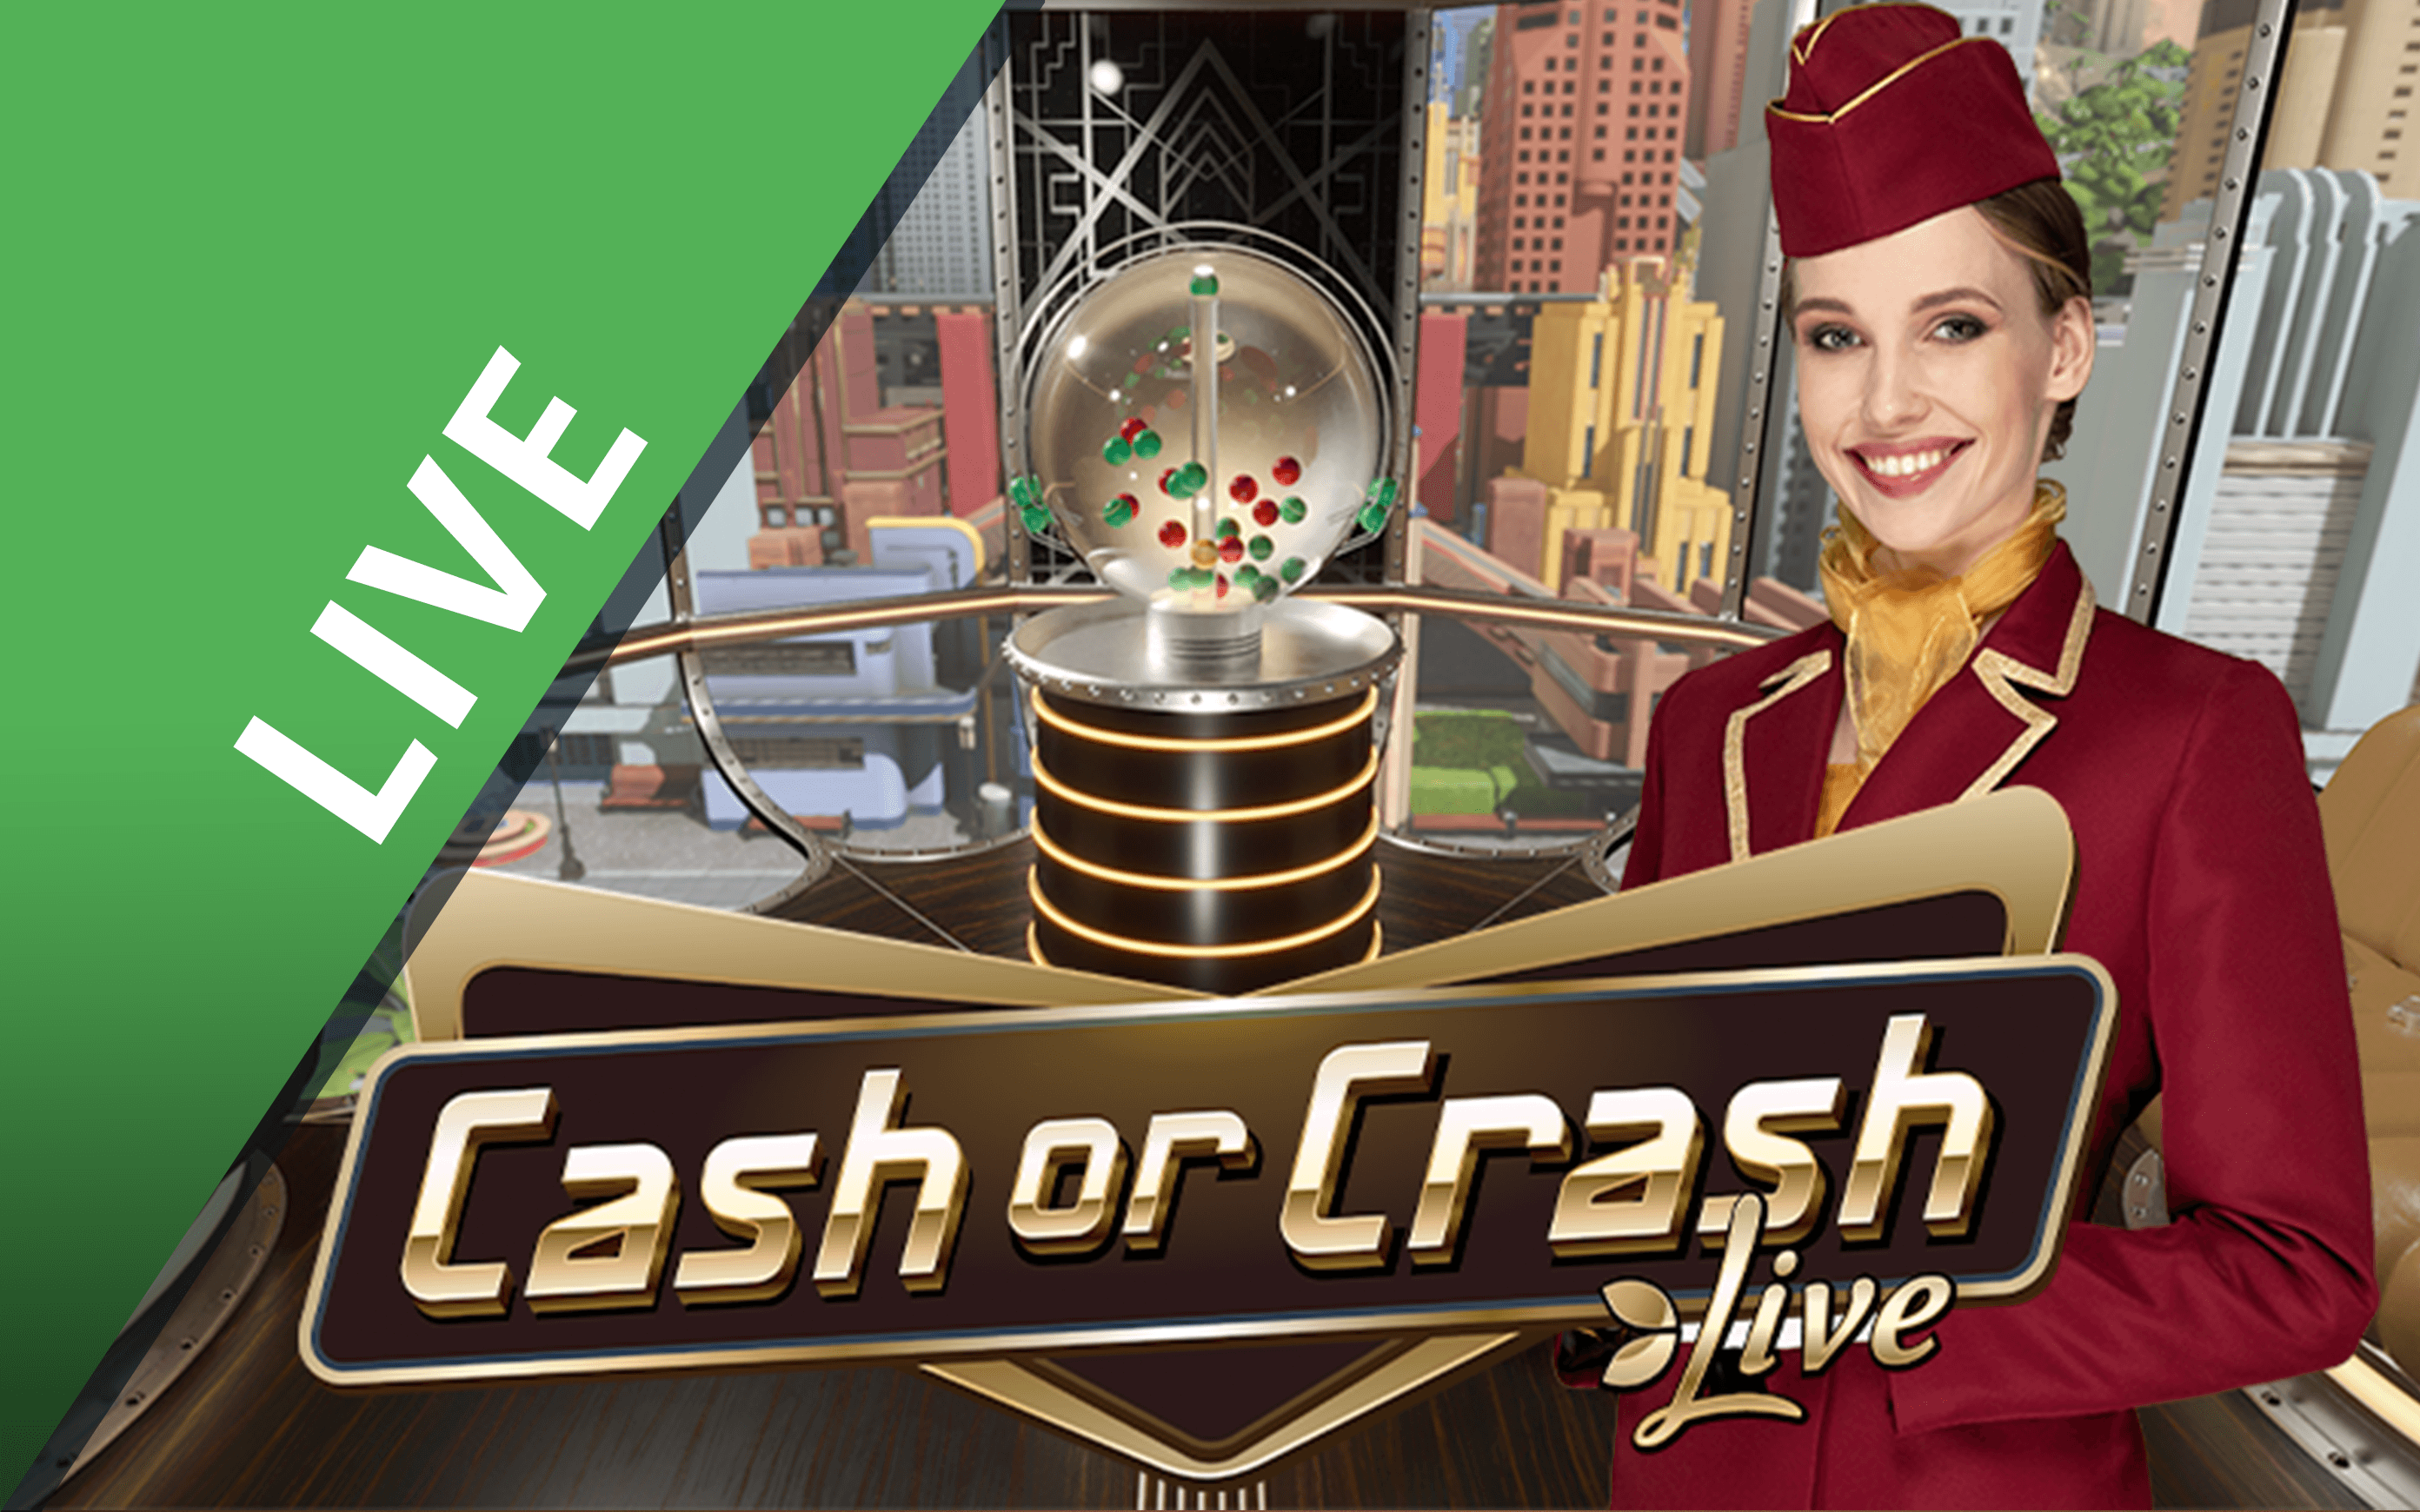 Chơi Cash or Crash trên sòng bạc trực tuyến Starcasino.be